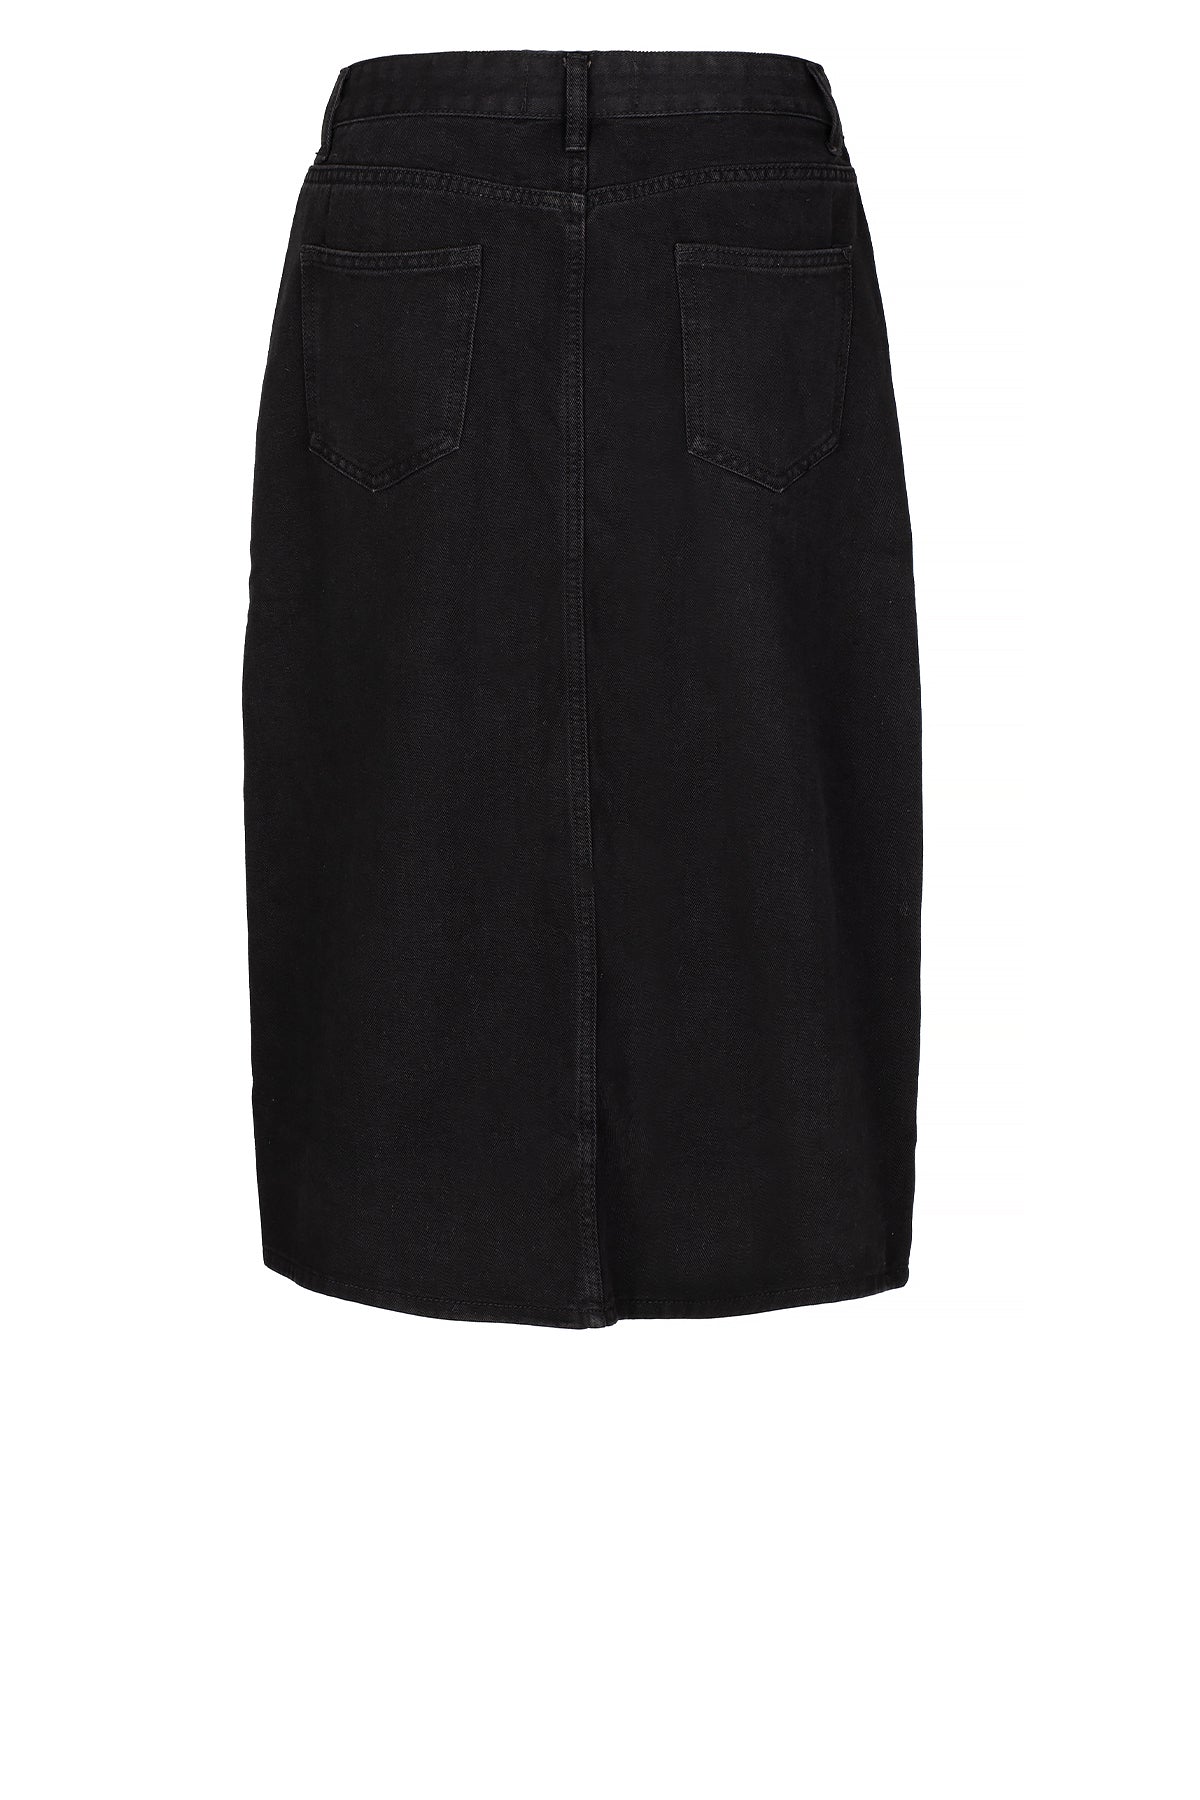 LUXZUZ // ONE TWO Brinana Skirt Skirt 999 Black